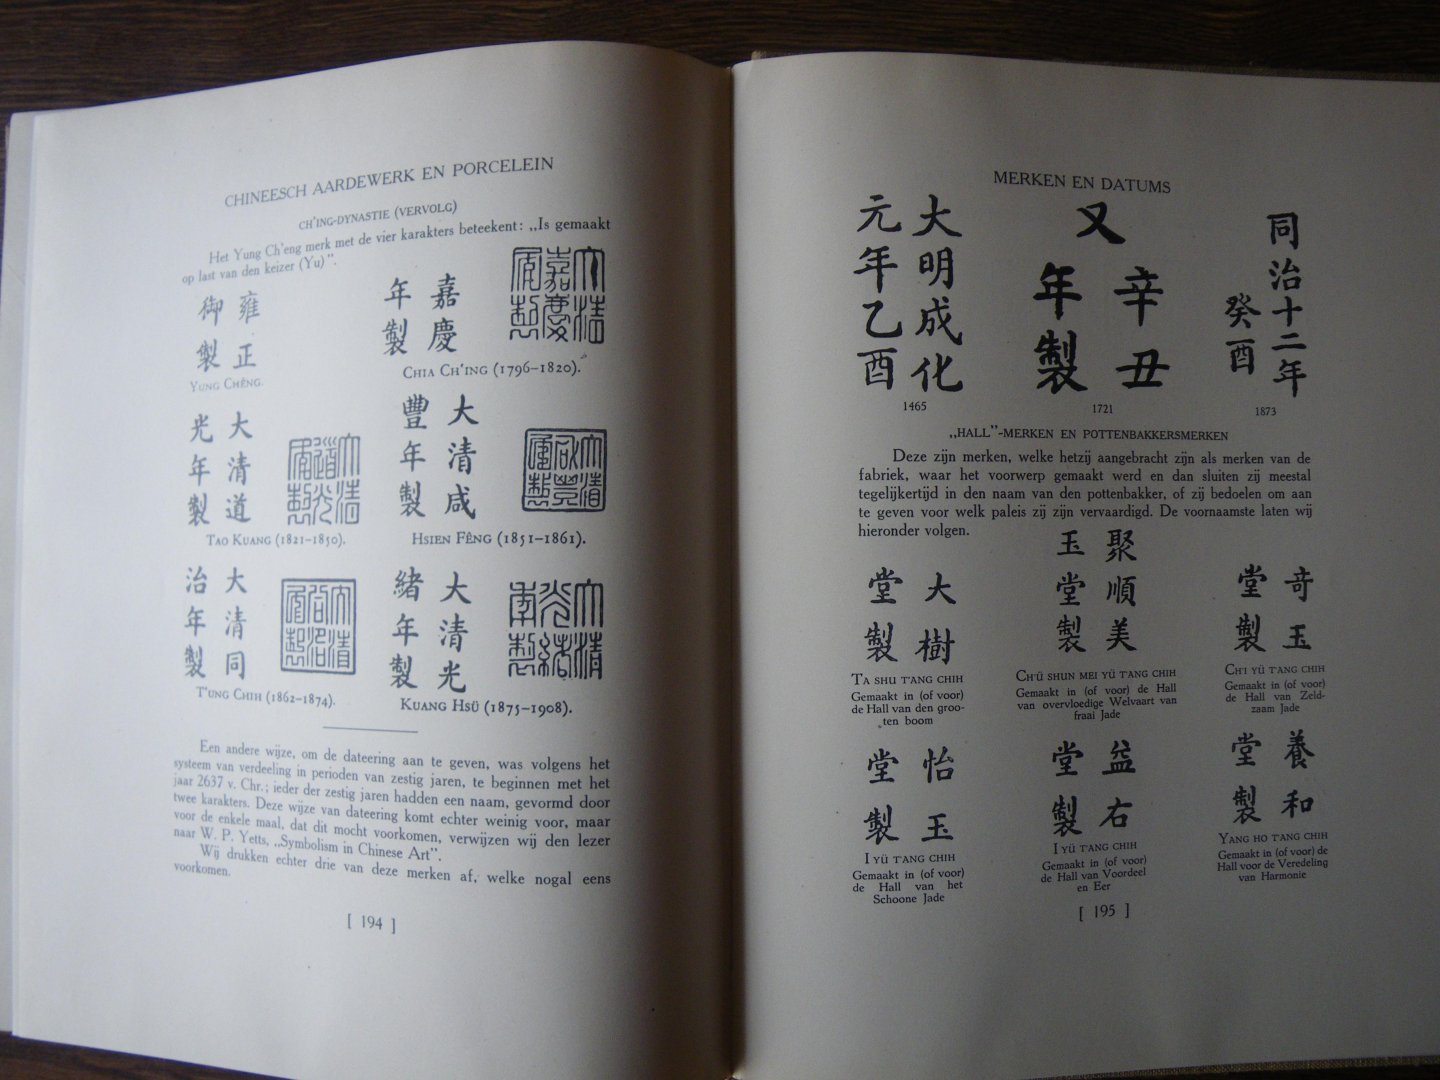 KLEYKAMP, A.J., - Chineesch aardewerk en porcelein, vanaf zijn oorsprong tot aan zijn verval.